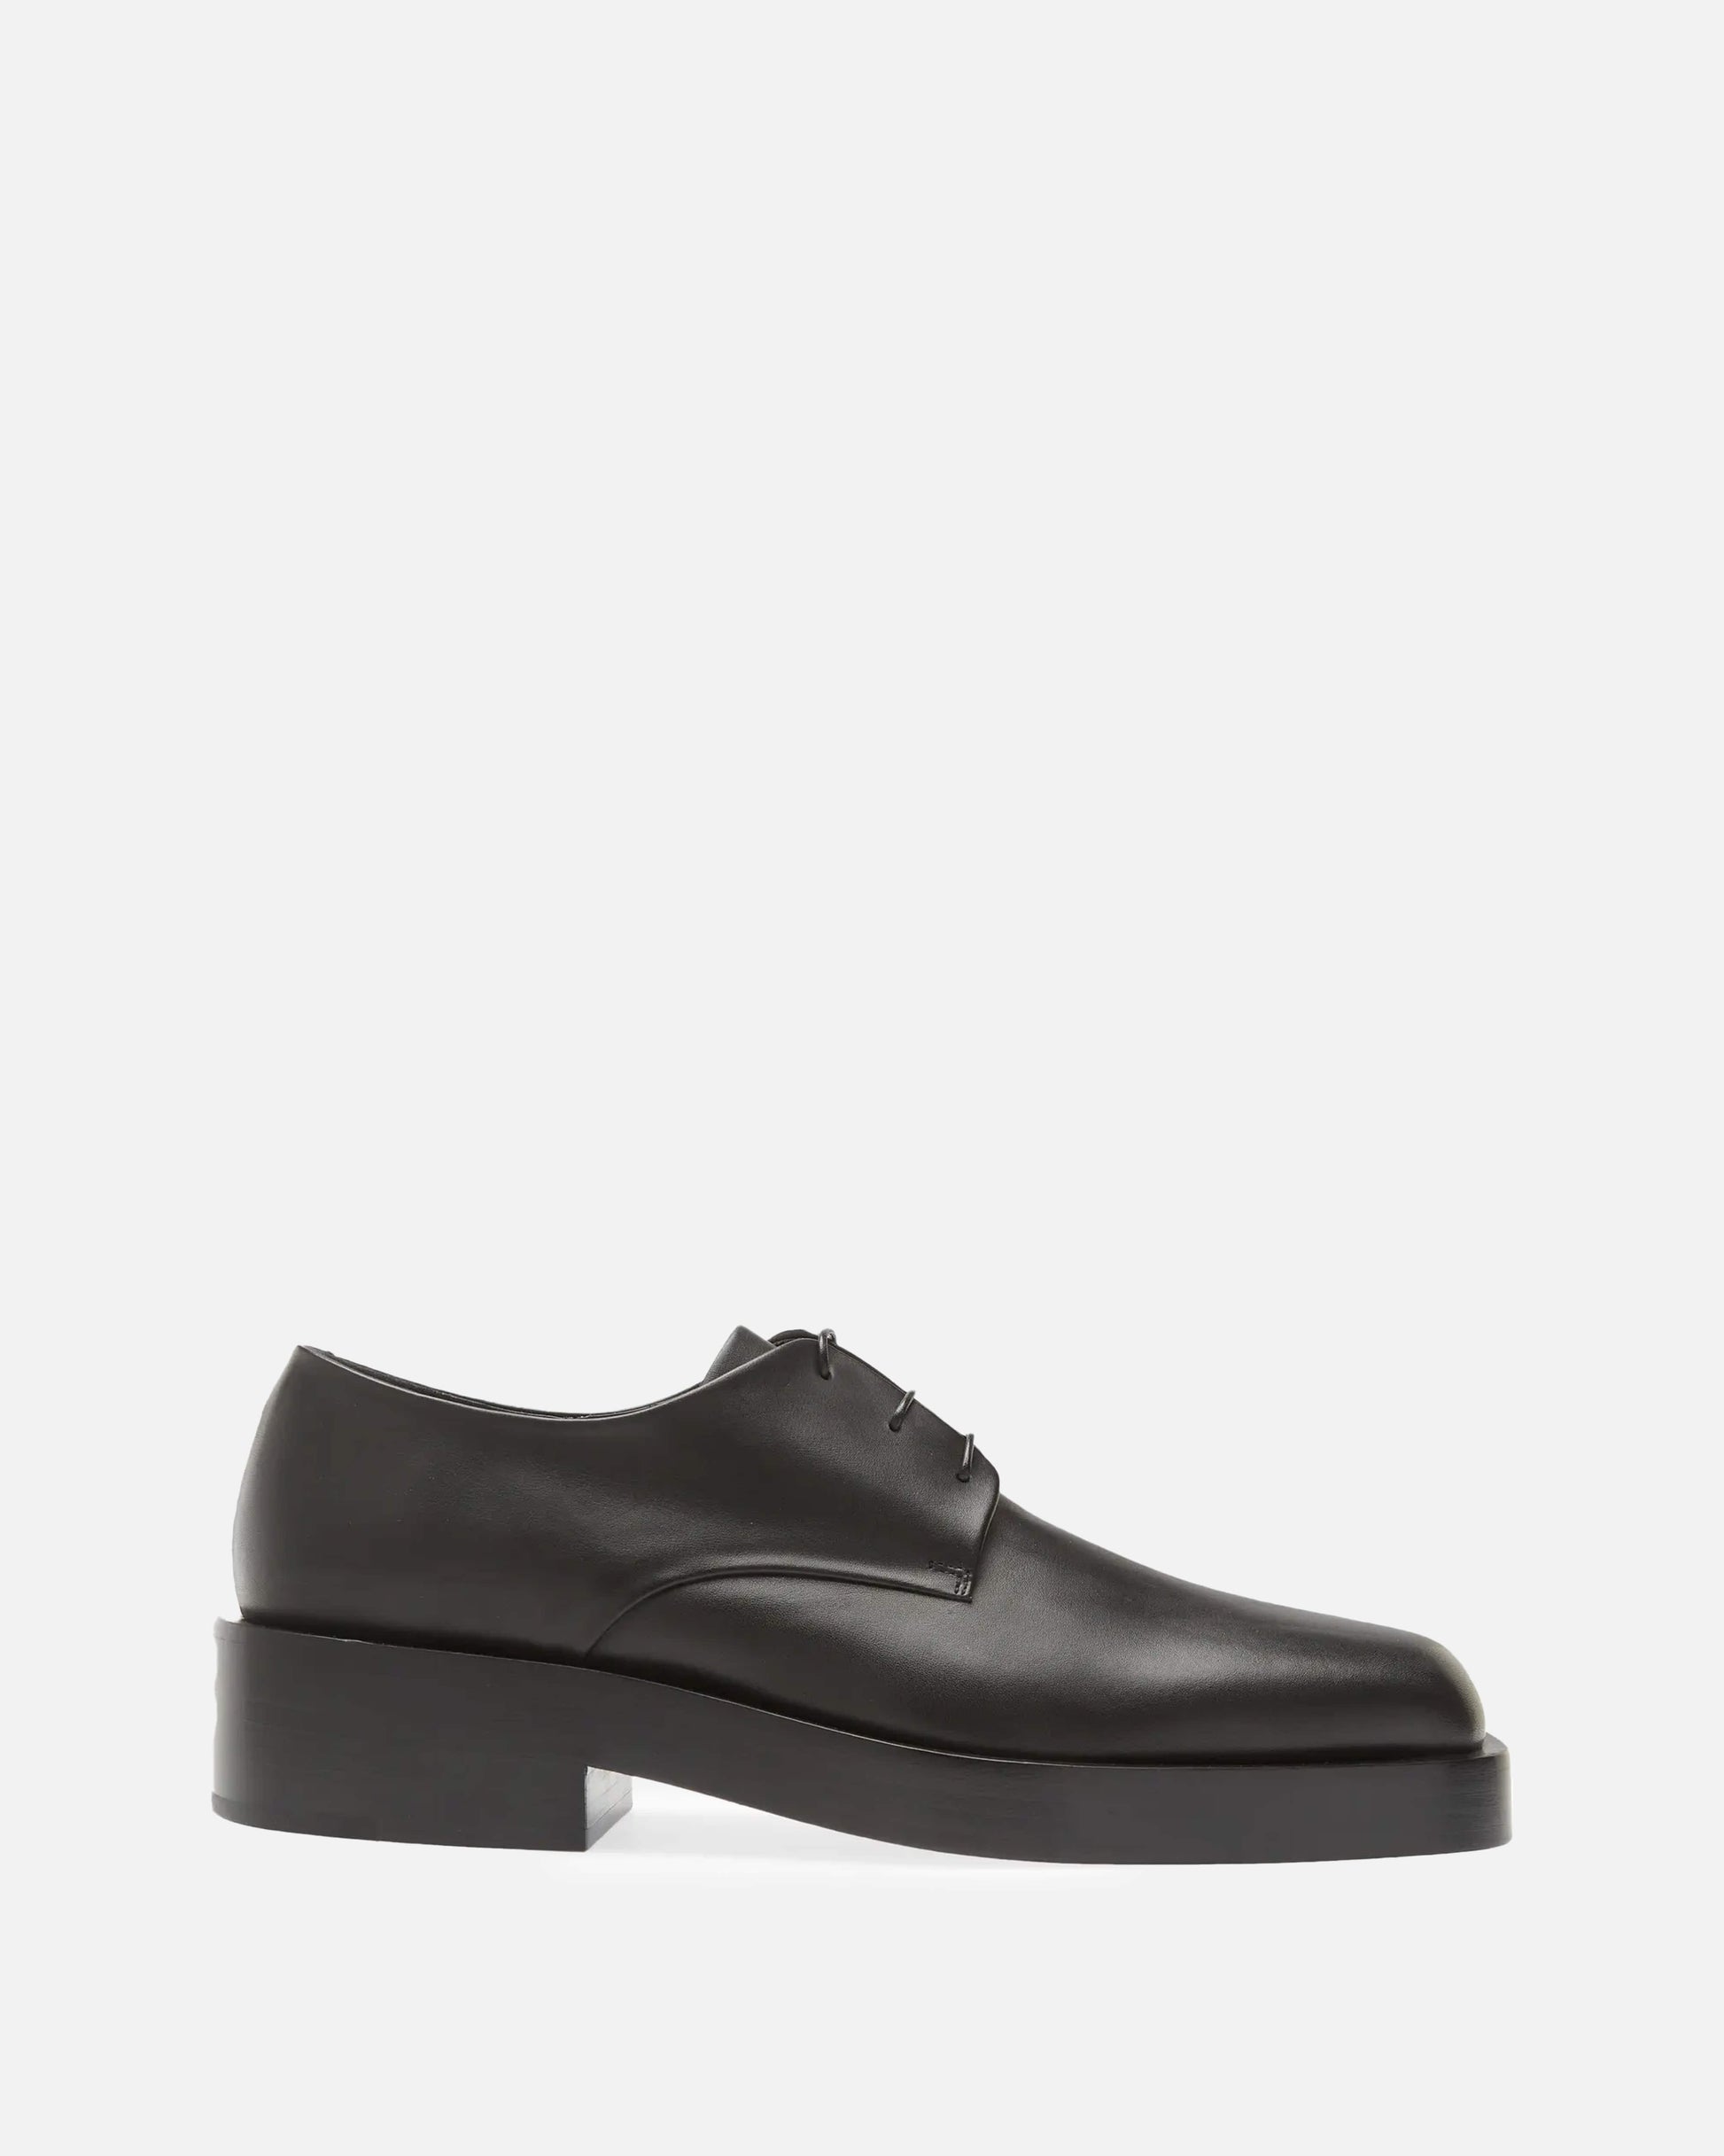 Jil Sander Men's Shoes Vitello Derby Shoes in Black